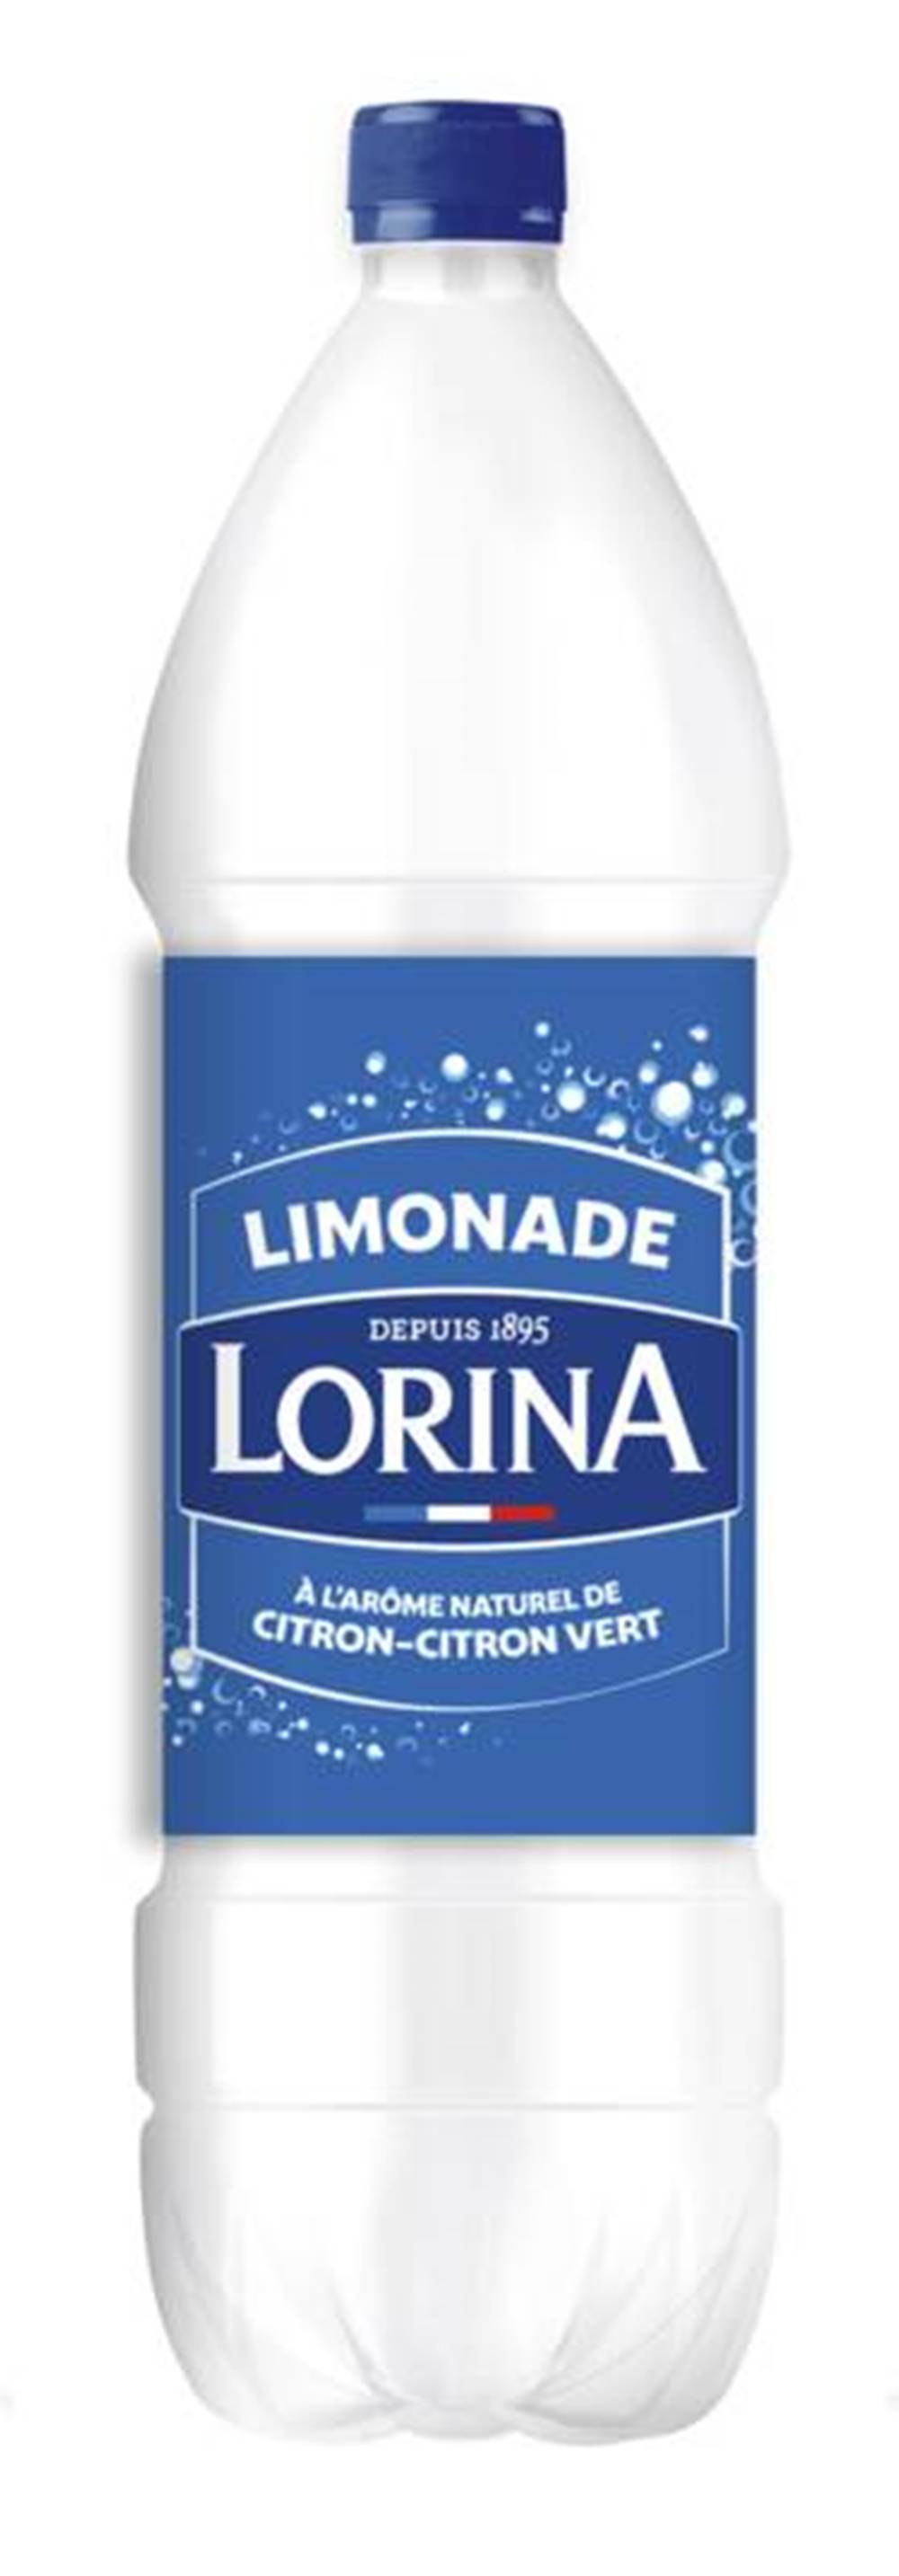 Lorina - Limonade double zest (1.25 L)